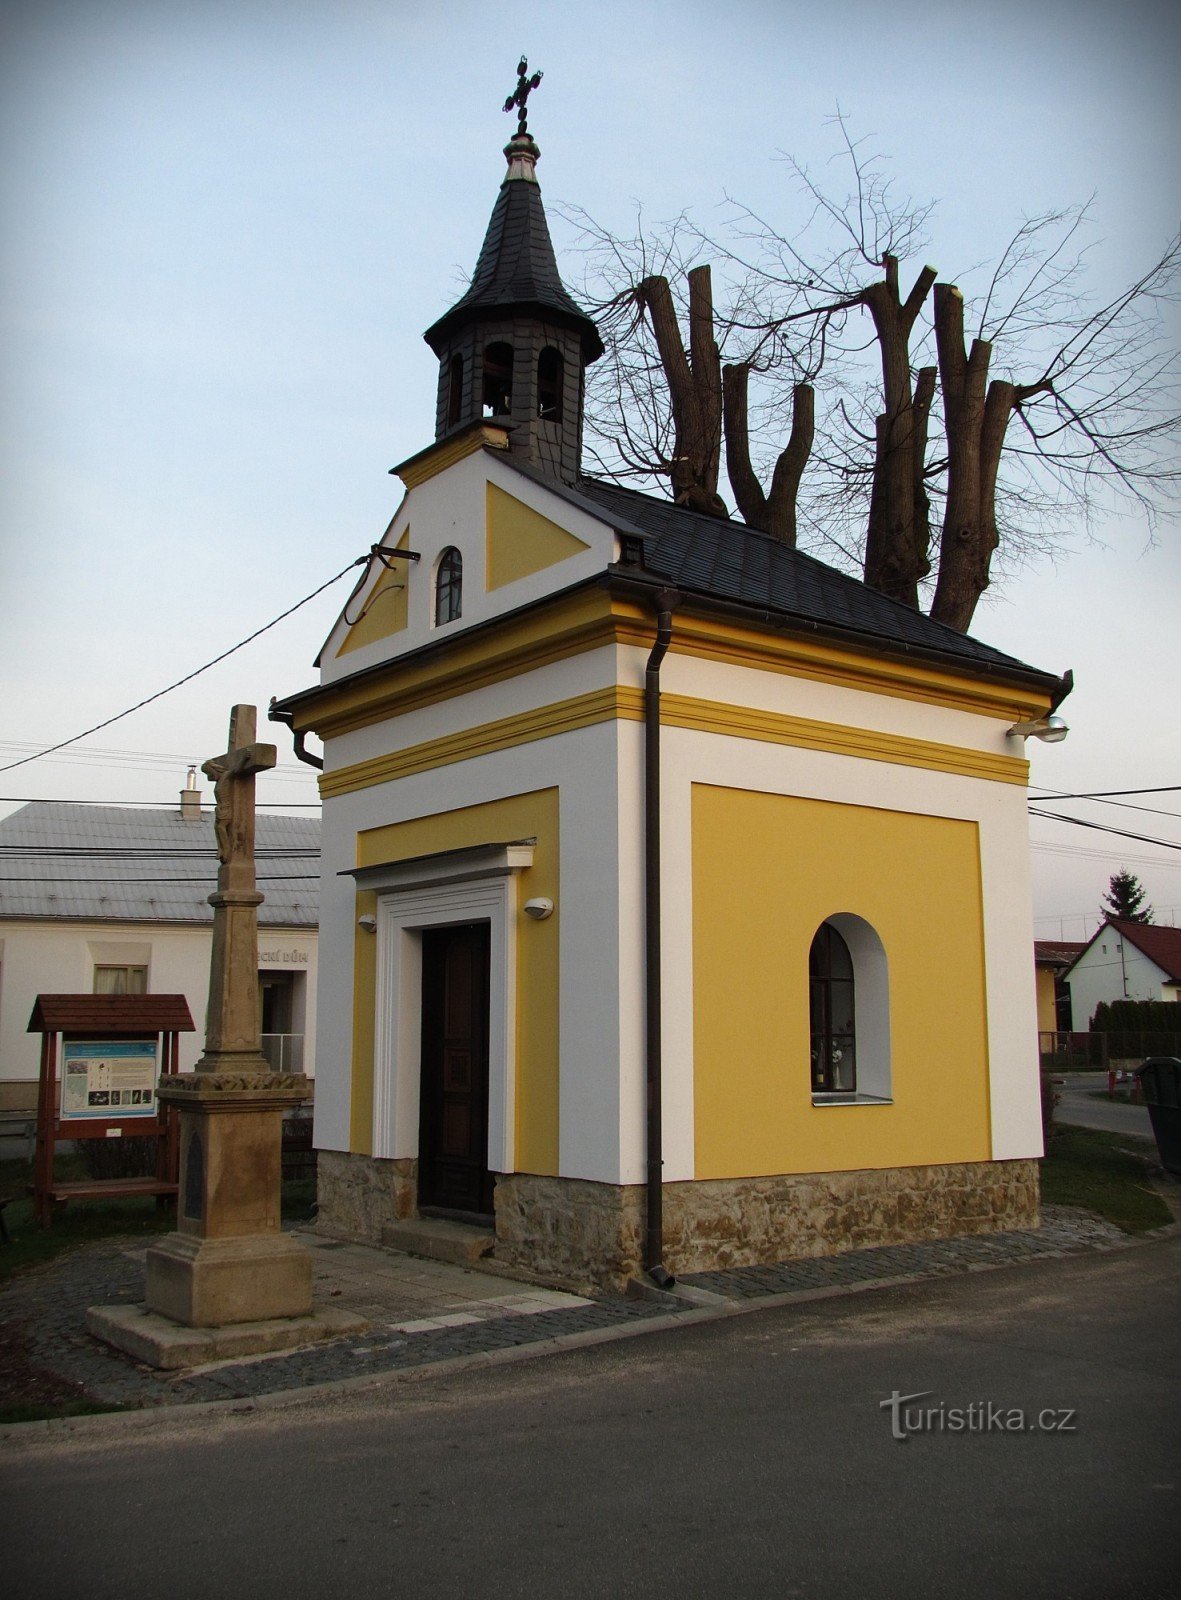 Lukoveček - zabytki i atrakcje wsi